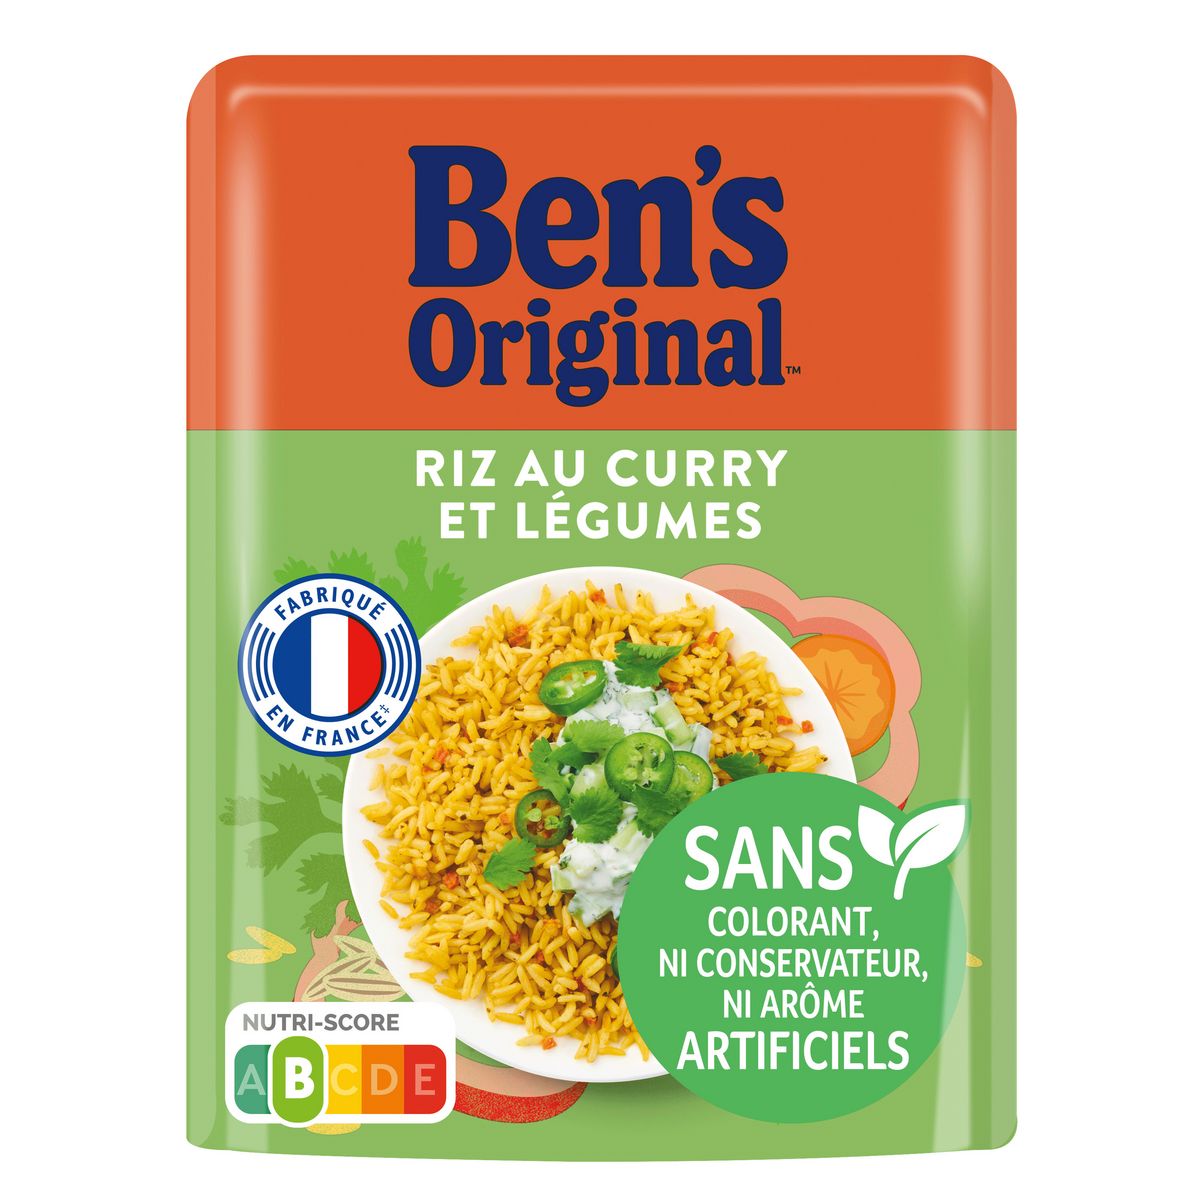 BEN'S ORIGINAL Riz au curry et légumes prêt en 2 minutes 220g